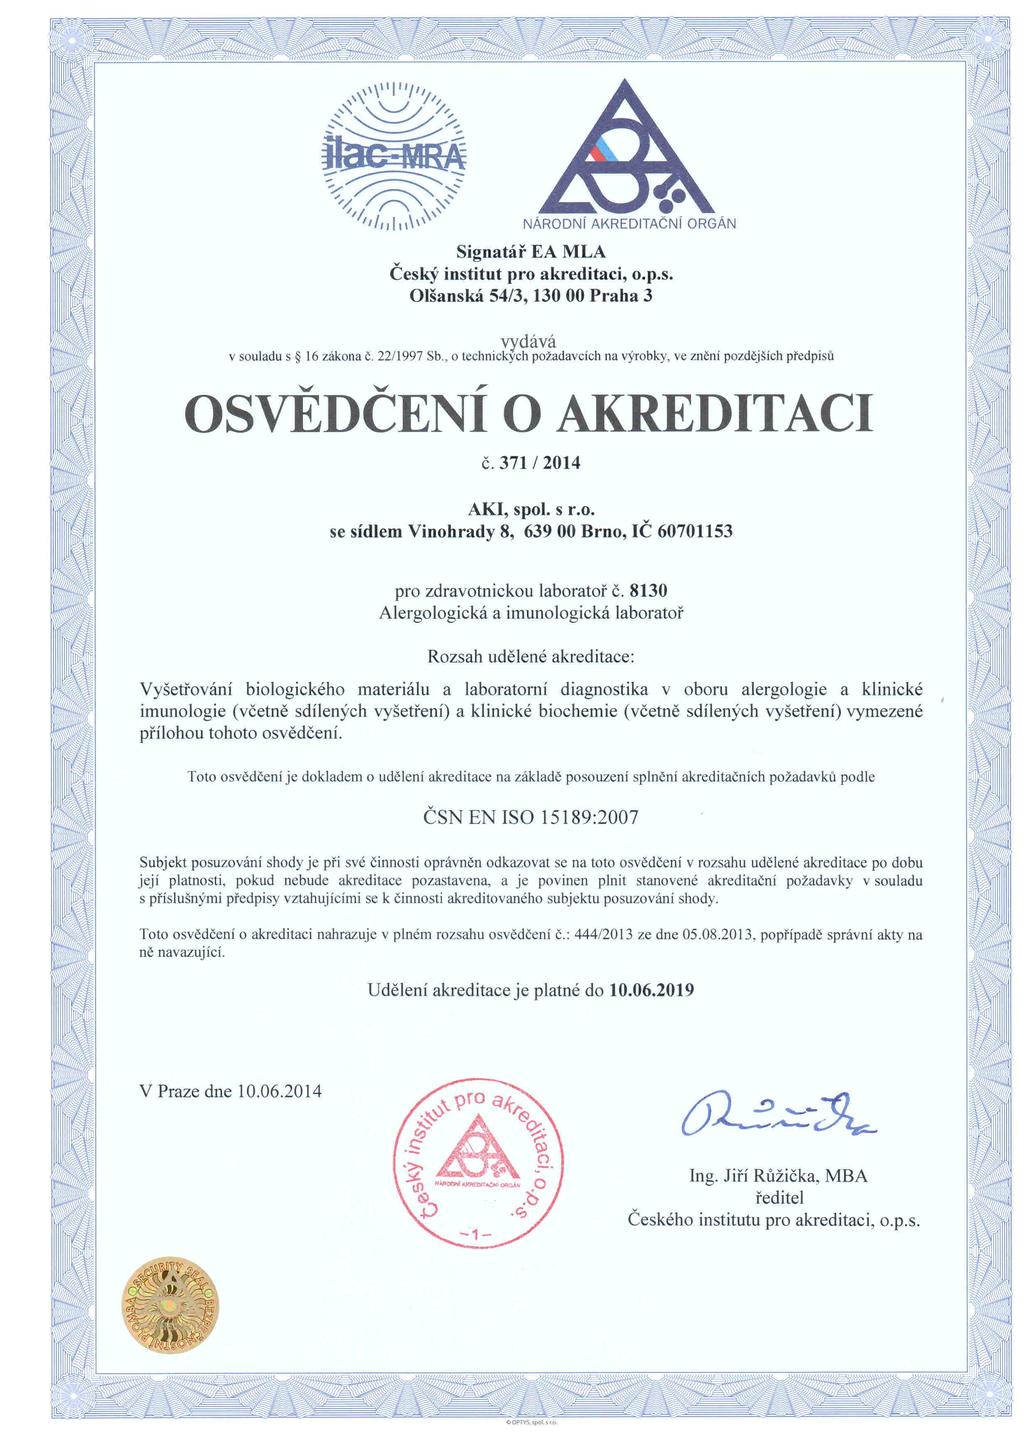 com Webové stránky www.akialerg.com 2.2. Základní informace o laboratoři Alergologická a imunologická laboratoř je akreditována dle ČSN EN ISO 15 189 od června 2011.